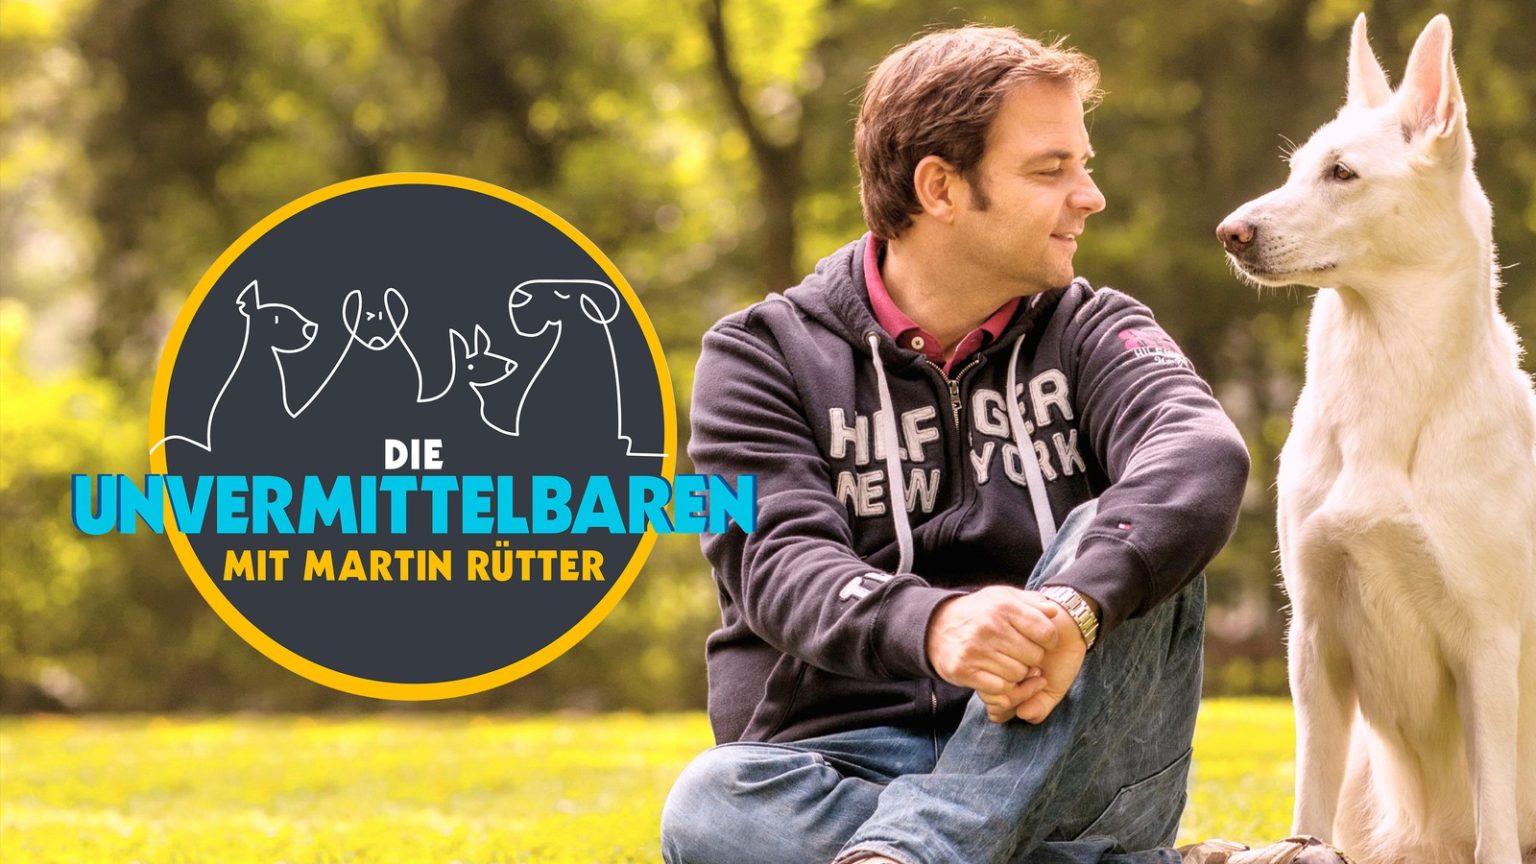 Die Unvermittelbaren mit Martin Rütter - Die Unvermittelbaren Mit Martin Ruetter 1536x864